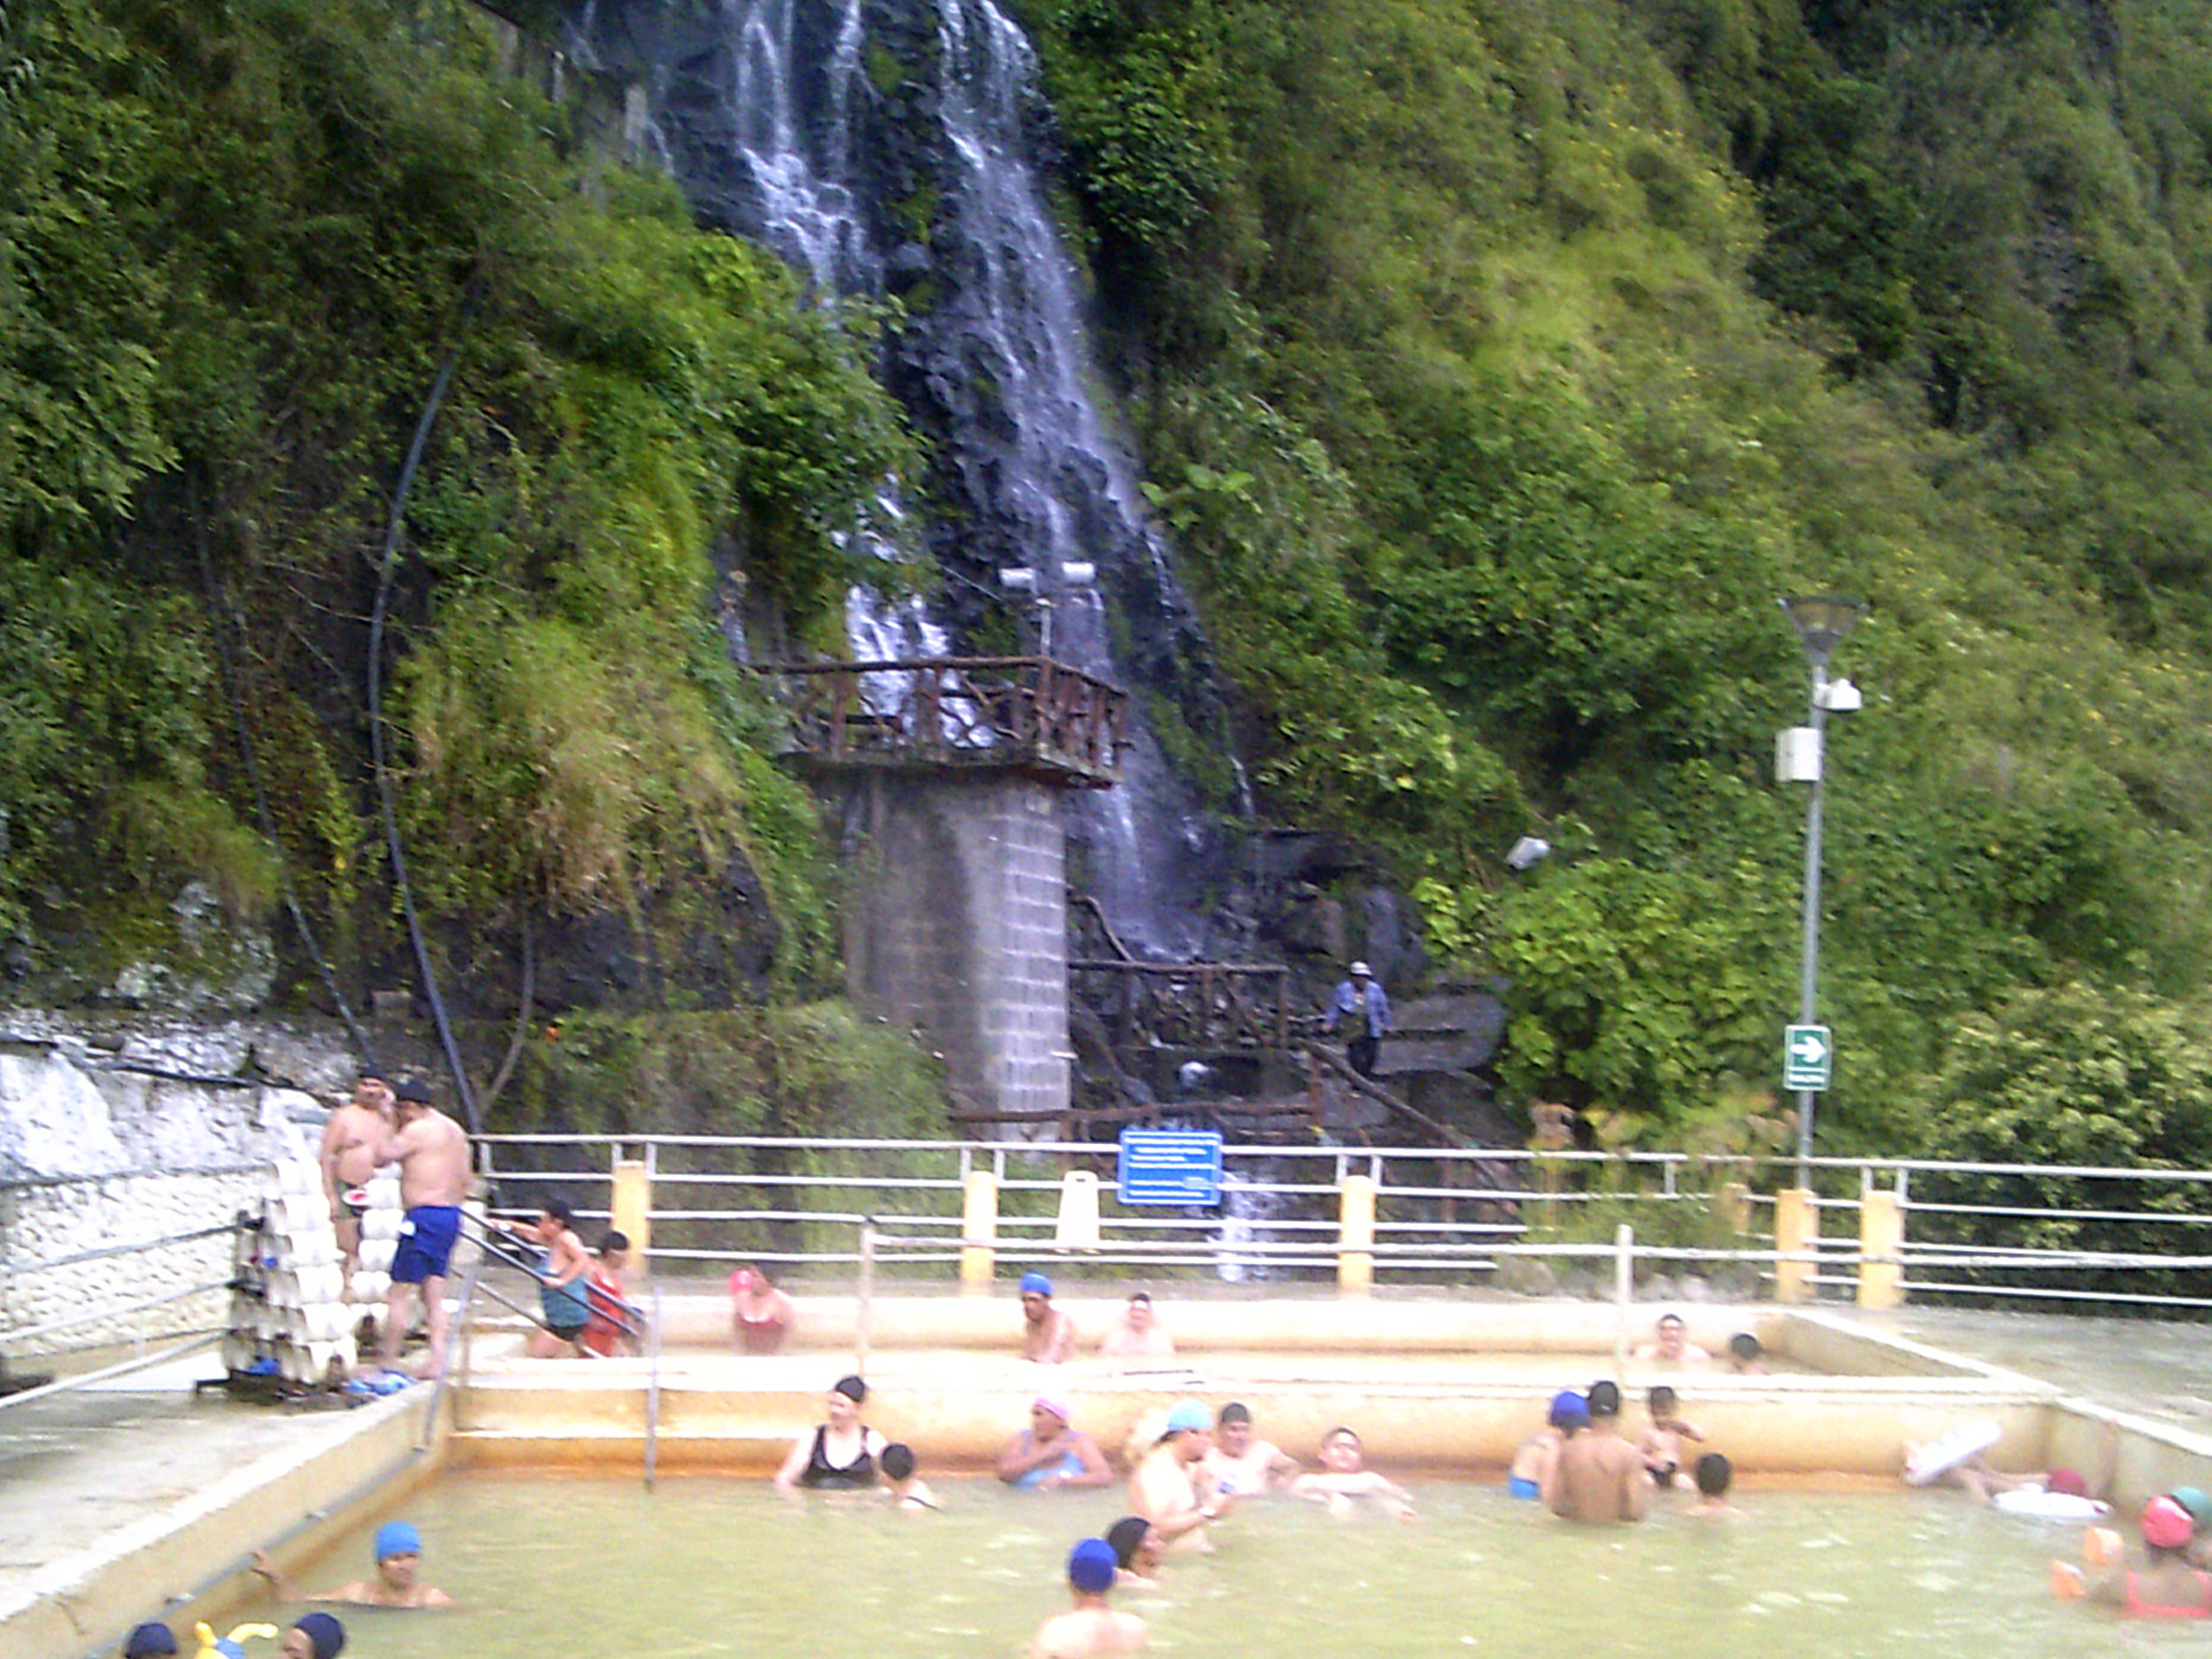 crowded hot springs.jpg